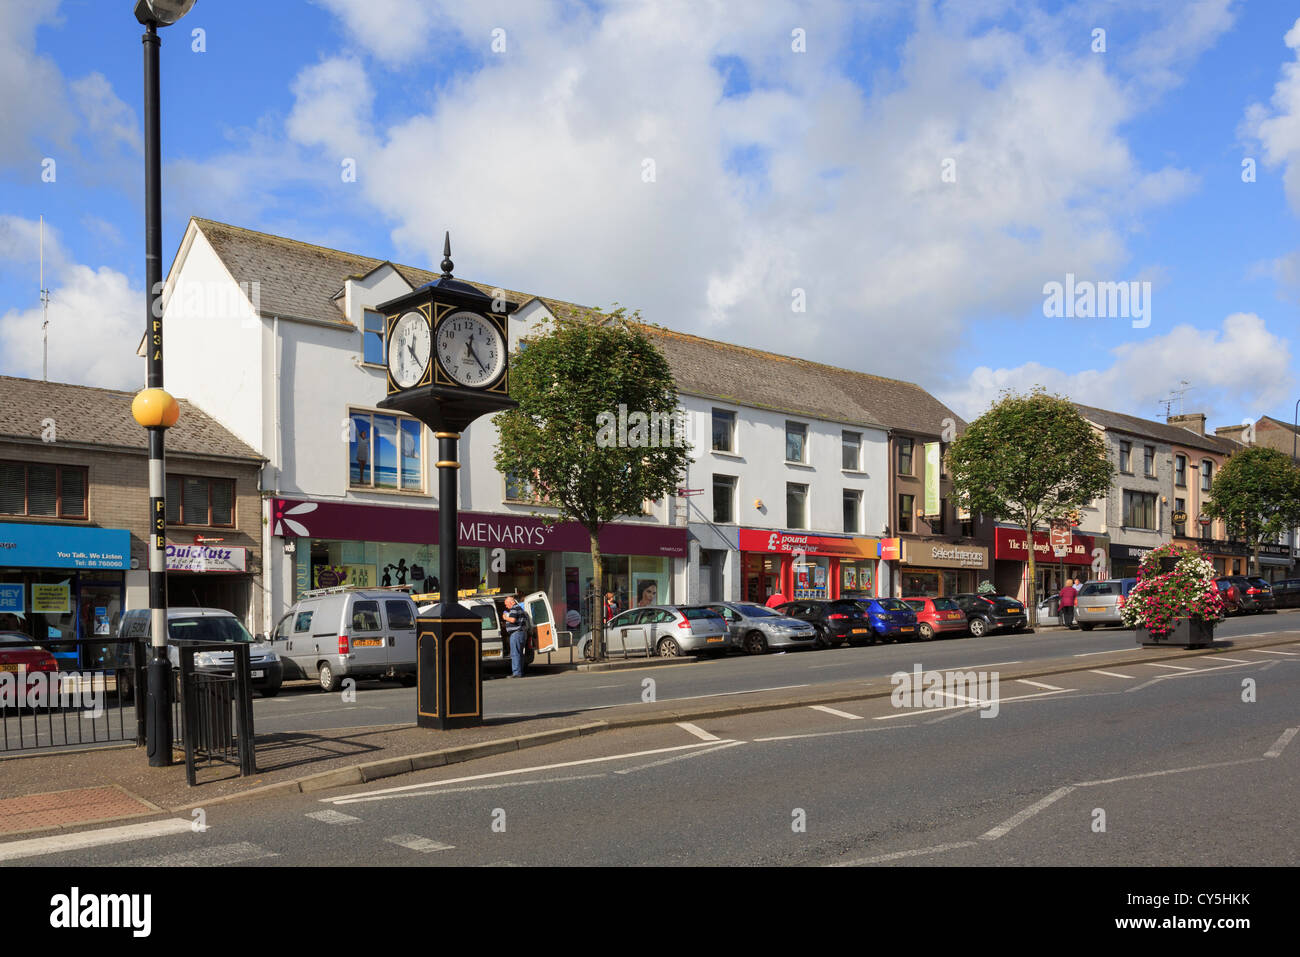 À l'échelle large rue principale de la ville, réveil et de magasins avec des voitures garées sur le bord de la route dans le comté de Tyrone Cookstown Irlande du Nord UK Banque D'Images